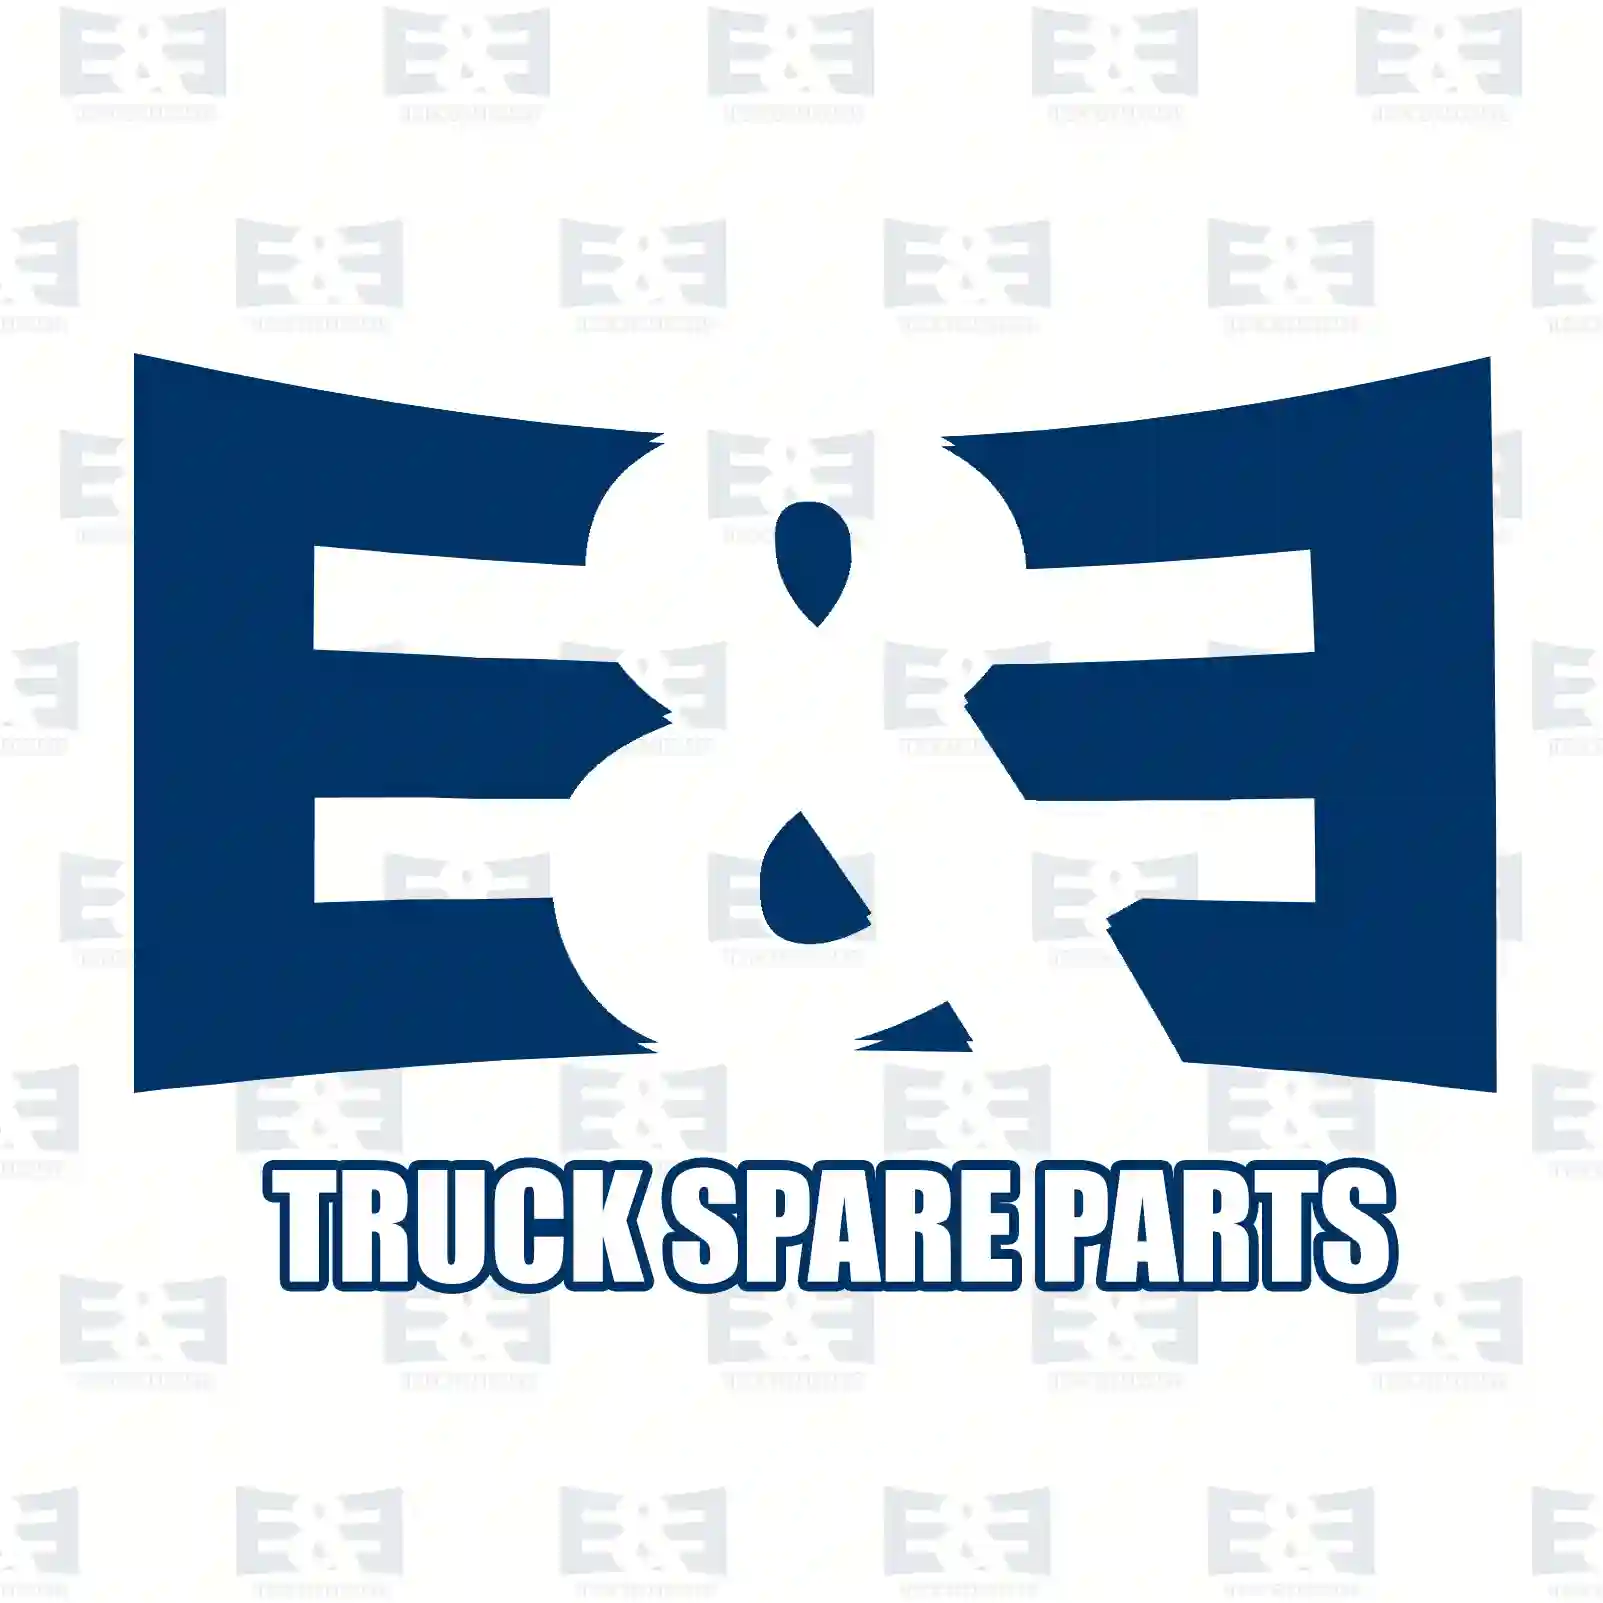 Turn signal lamp, 2E2299205, 9738200021, ZG21150-0008 ||  2E2299205 E&E Truck Spare Parts | Truck Spare Parts, Auotomotive Spare Parts Turn signal lamp, 2E2299205, 9738200021, ZG21150-0008 ||  2E2299205 E&E Truck Spare Parts | Truck Spare Parts, Auotomotive Spare Parts